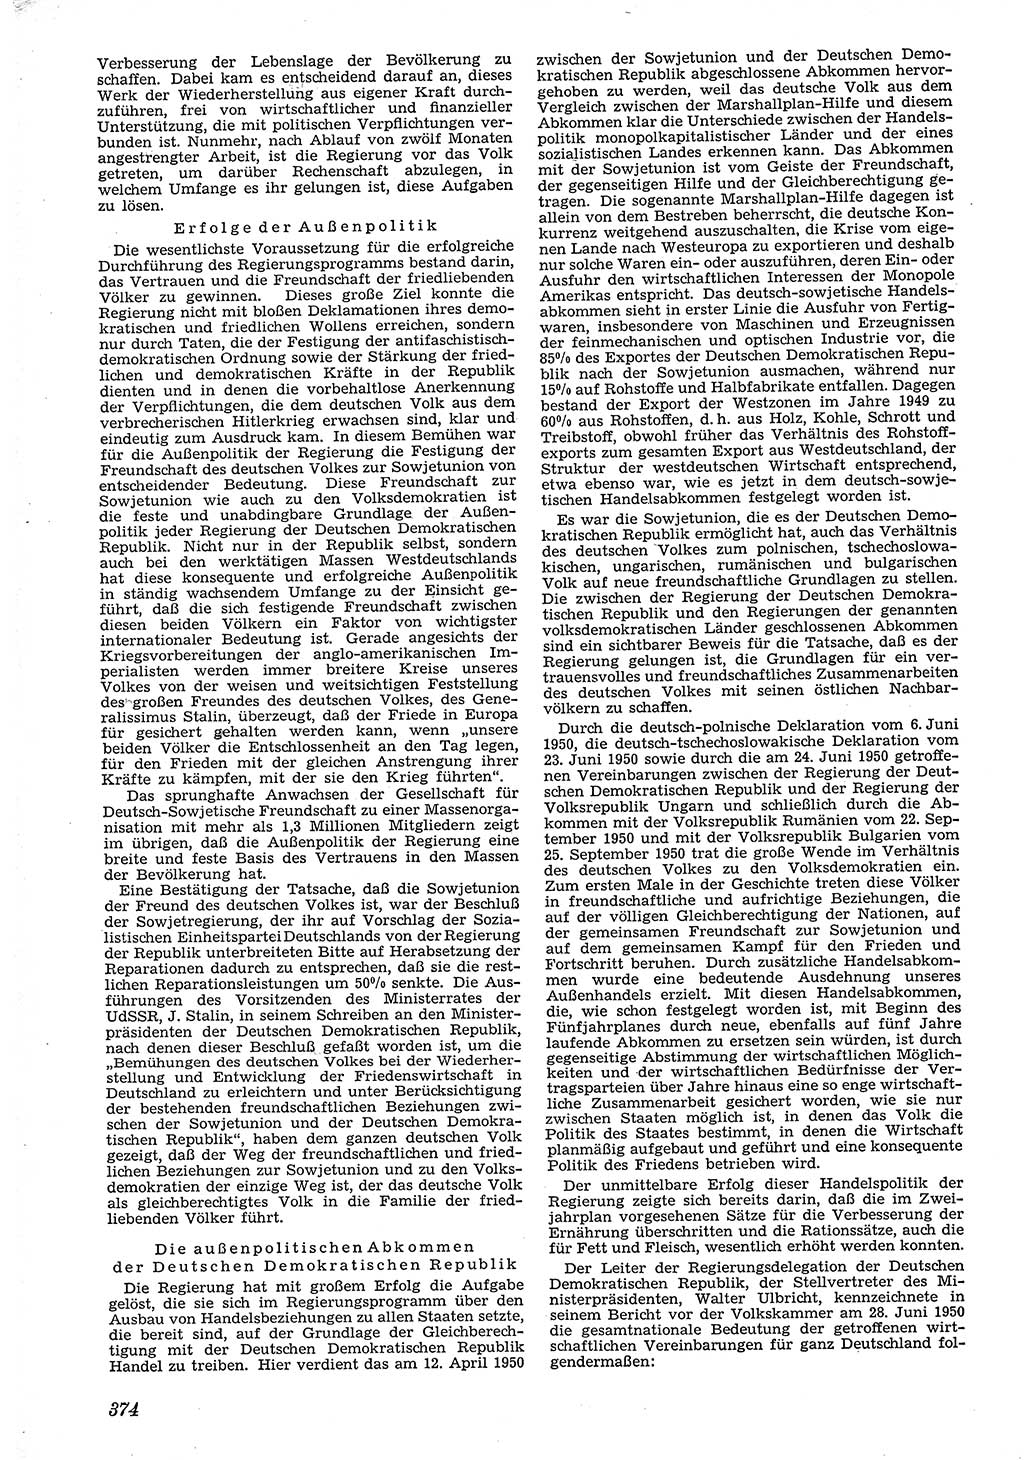 Neue Justiz (NJ), Zeitschrift für Recht und Rechtswissenschaft [Deutsche Demokratische Republik (DDR)], 4. Jahrgang 1950, Seite 374 (NJ DDR 1950, S. 374)